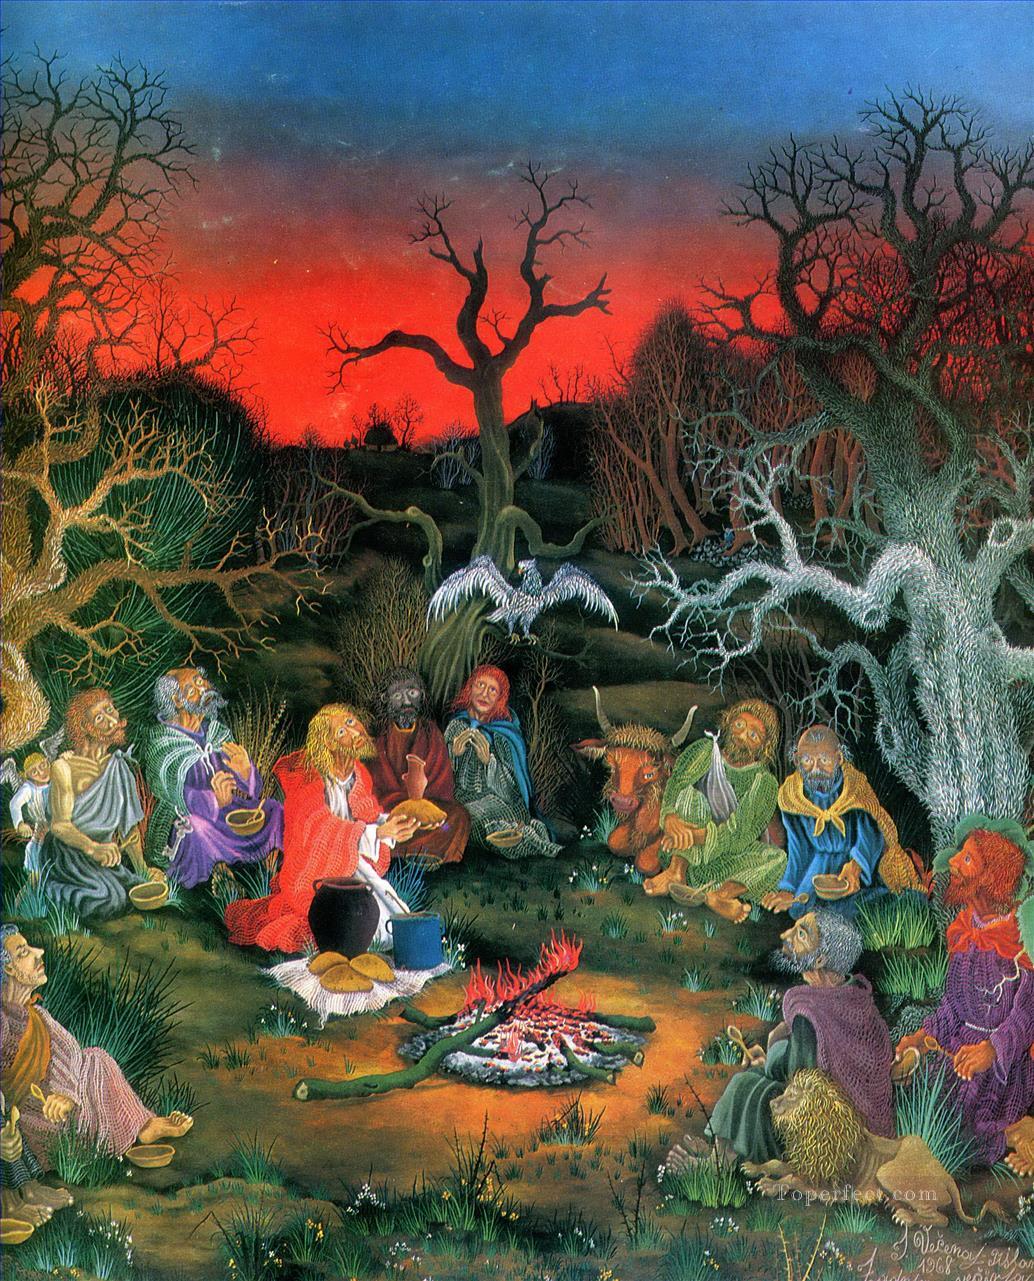 イワン・ヴェセナージ 1968 最後の晩餐 ファンタジー油絵